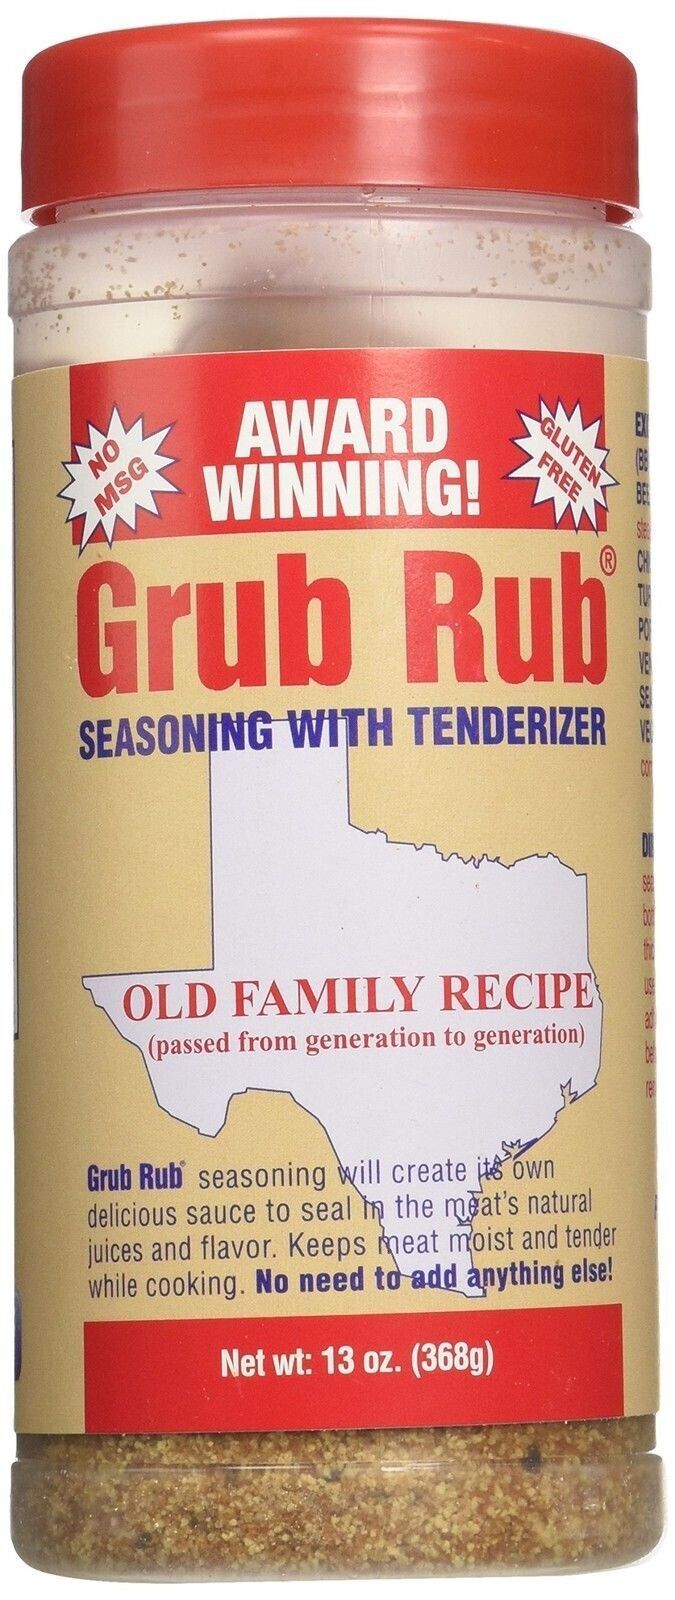 Primary image for Texas Grub Rub Seasoning - Made in Texas (THREE) Pack - Original Recipe - No MSG